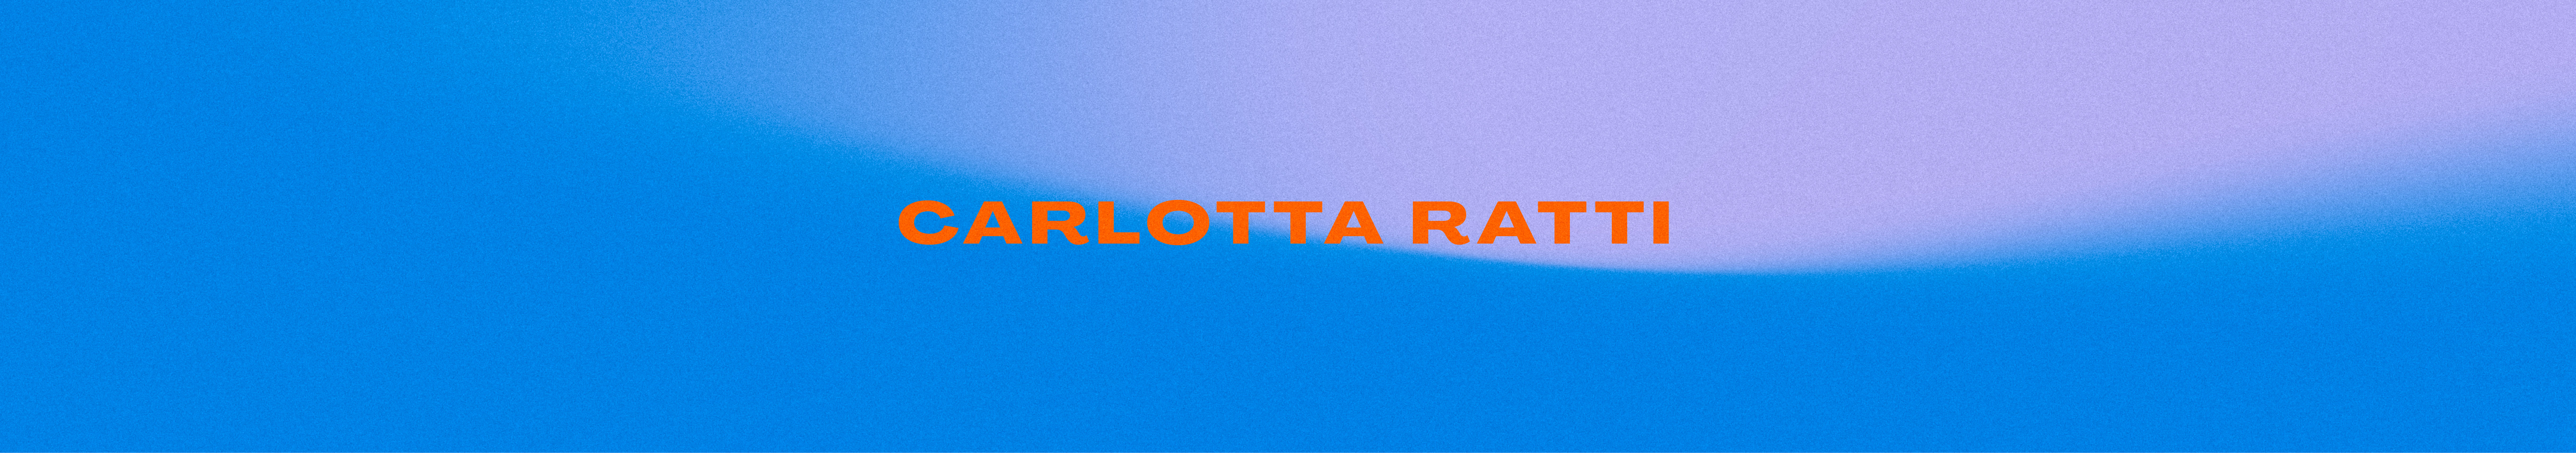 Carlotta Ratti's profile banner